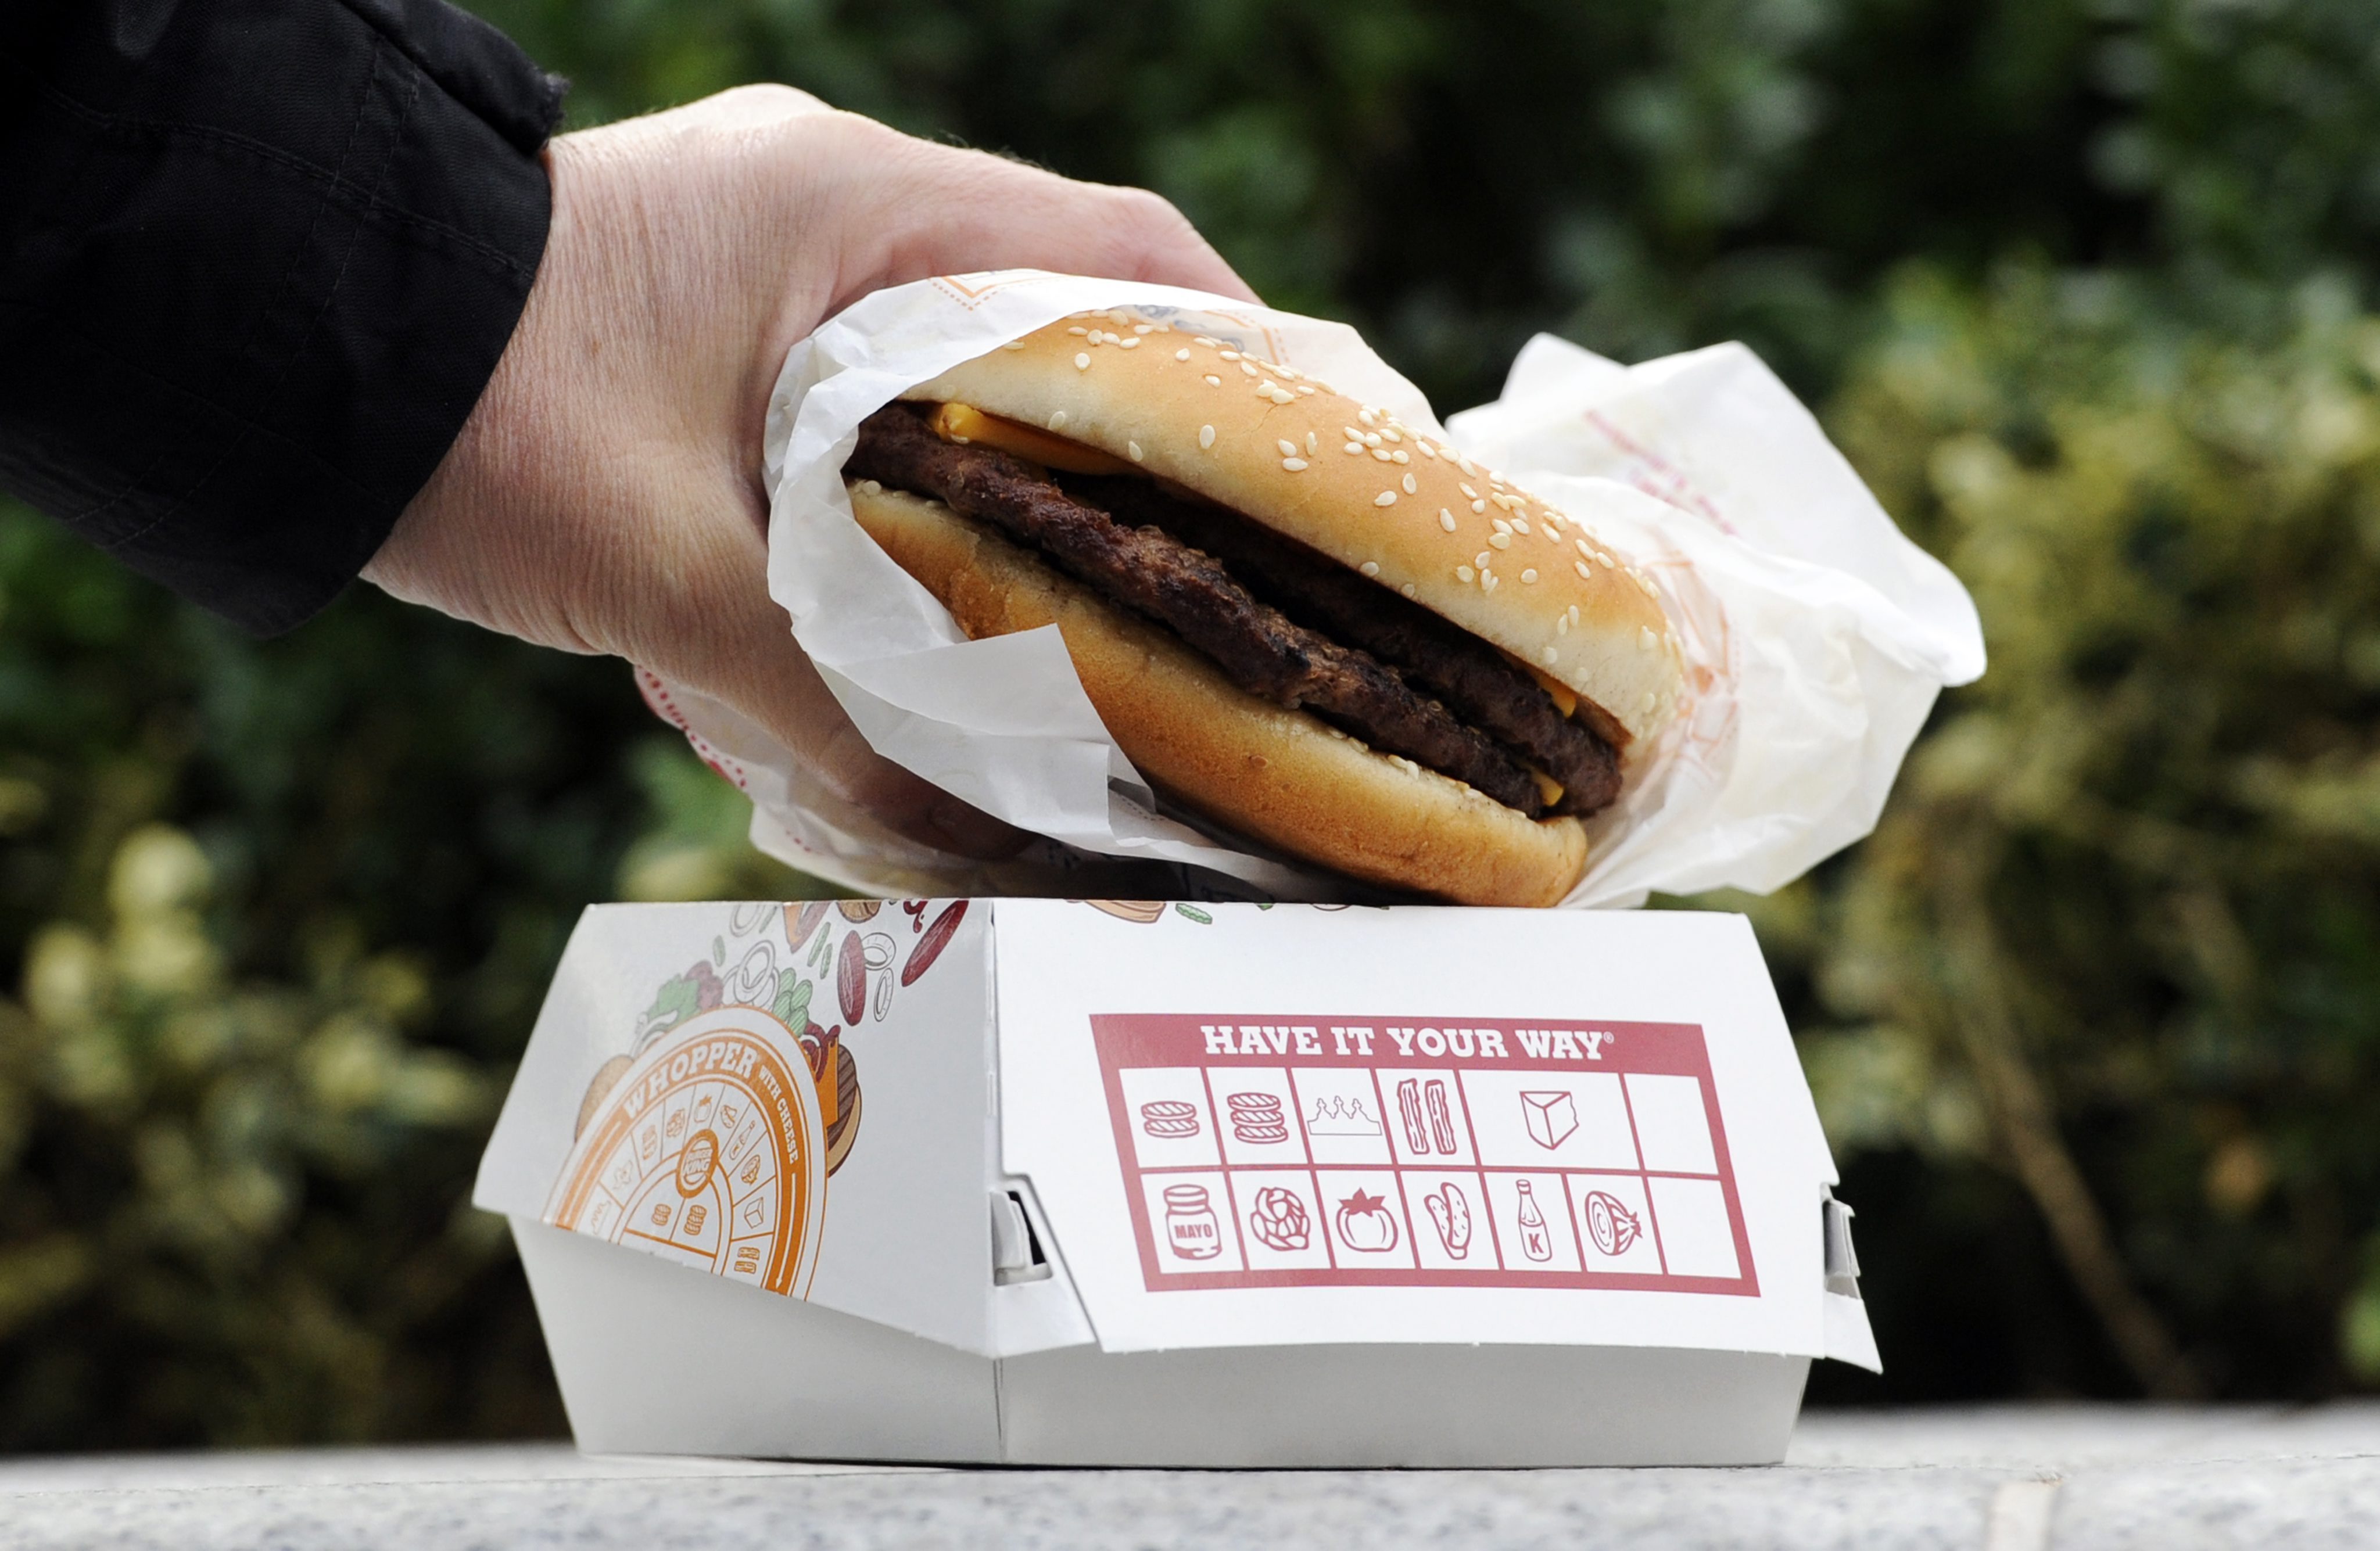 De reorganisatie van de laatste maanden bij Burger King lijkt zijn vruchten af te werpen. De winst van de fastfoodketen vertienvoudigde ten opzichte van hetzelfde kwartaal vorig jaar.